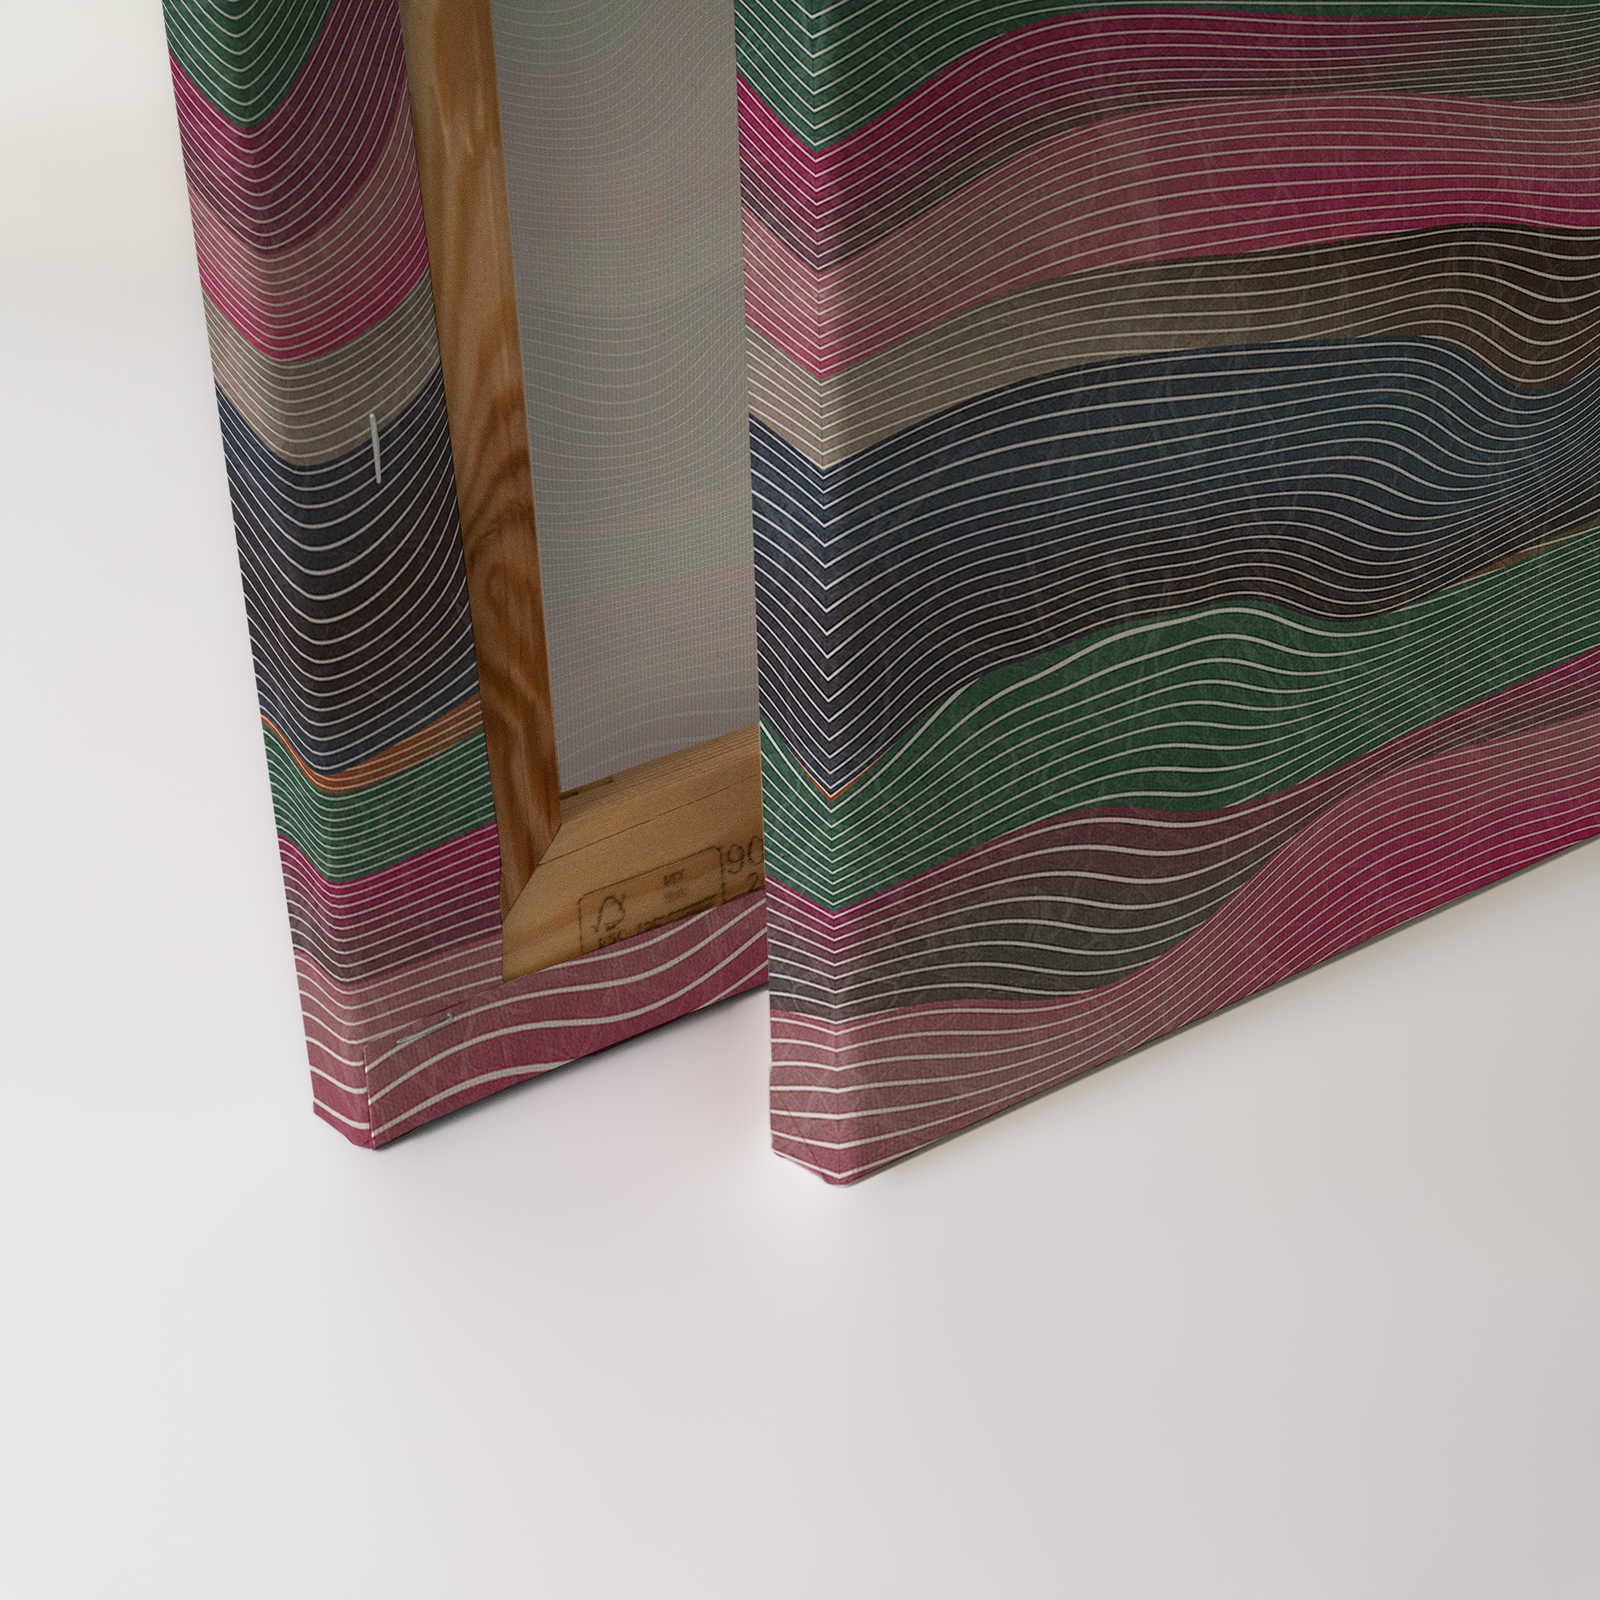             Spazio 1 - Quadro su tela con motivo a onde rosa e verde in stile retrò - 0,90 m x 0,60 m
        